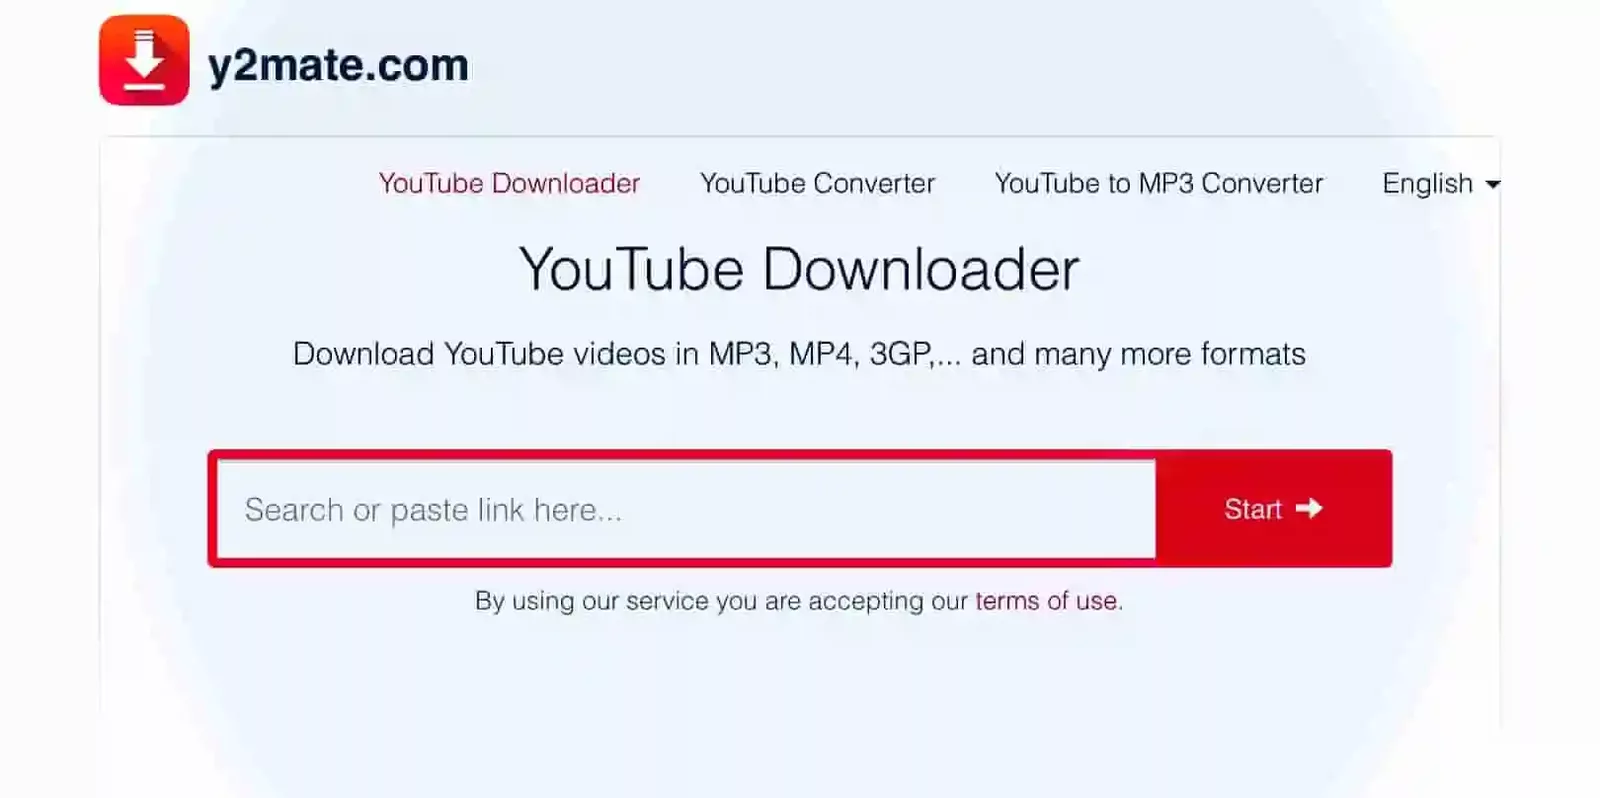 Download mp3 download mp4. Y2mate. Y2mate.com. Y2mate youtube downloader. Y2mate downloader кряк.